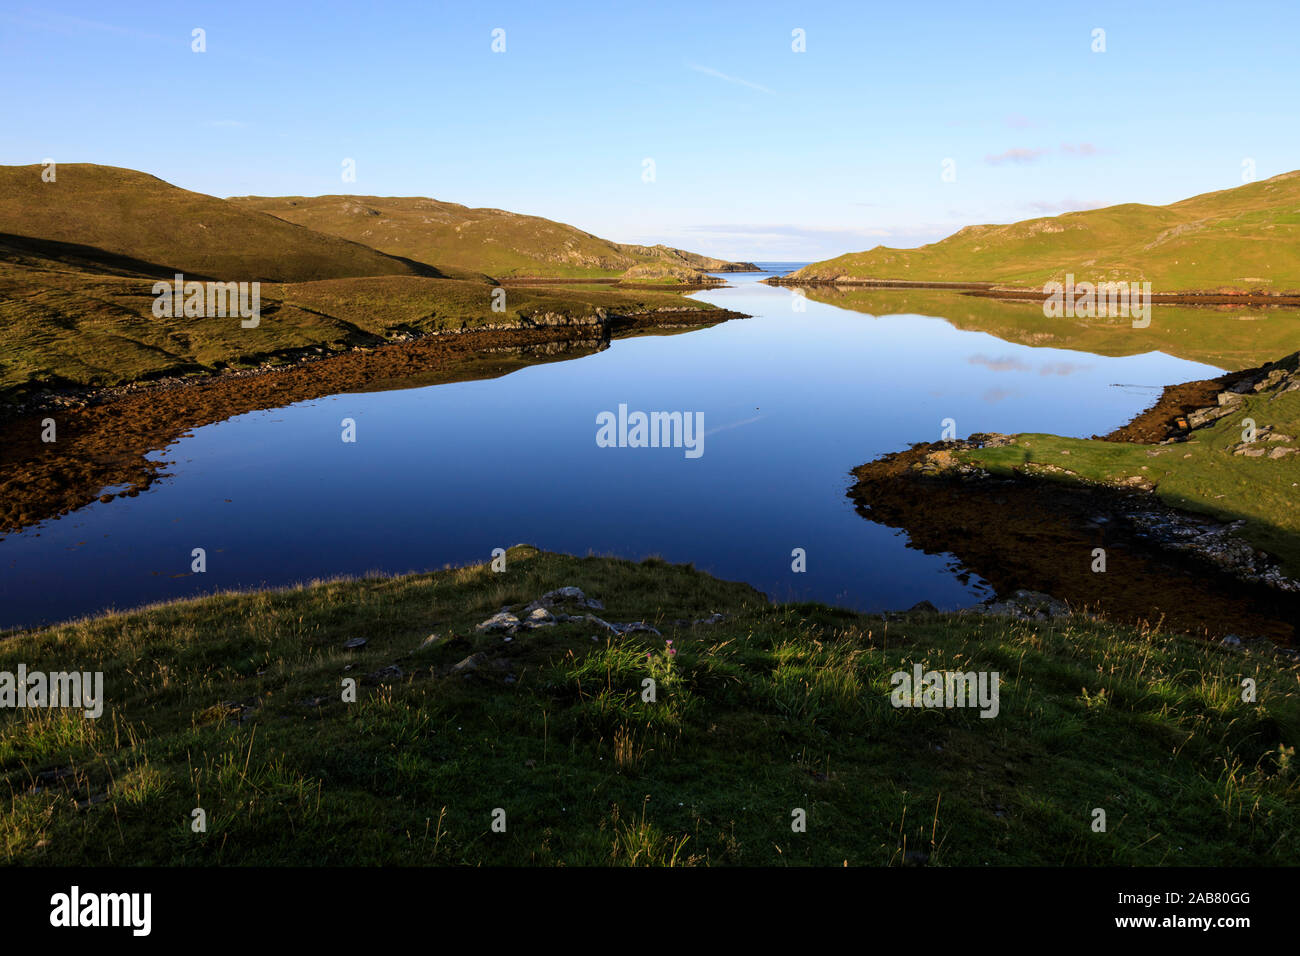 Mavis Grind, temprano en la mañana reflexiones, estrecho istmo entre el Océano Atlántico y el Mar del Norte, Islas Shetland, Escocia, Reino Unido, Europa, Europa Foto de stock